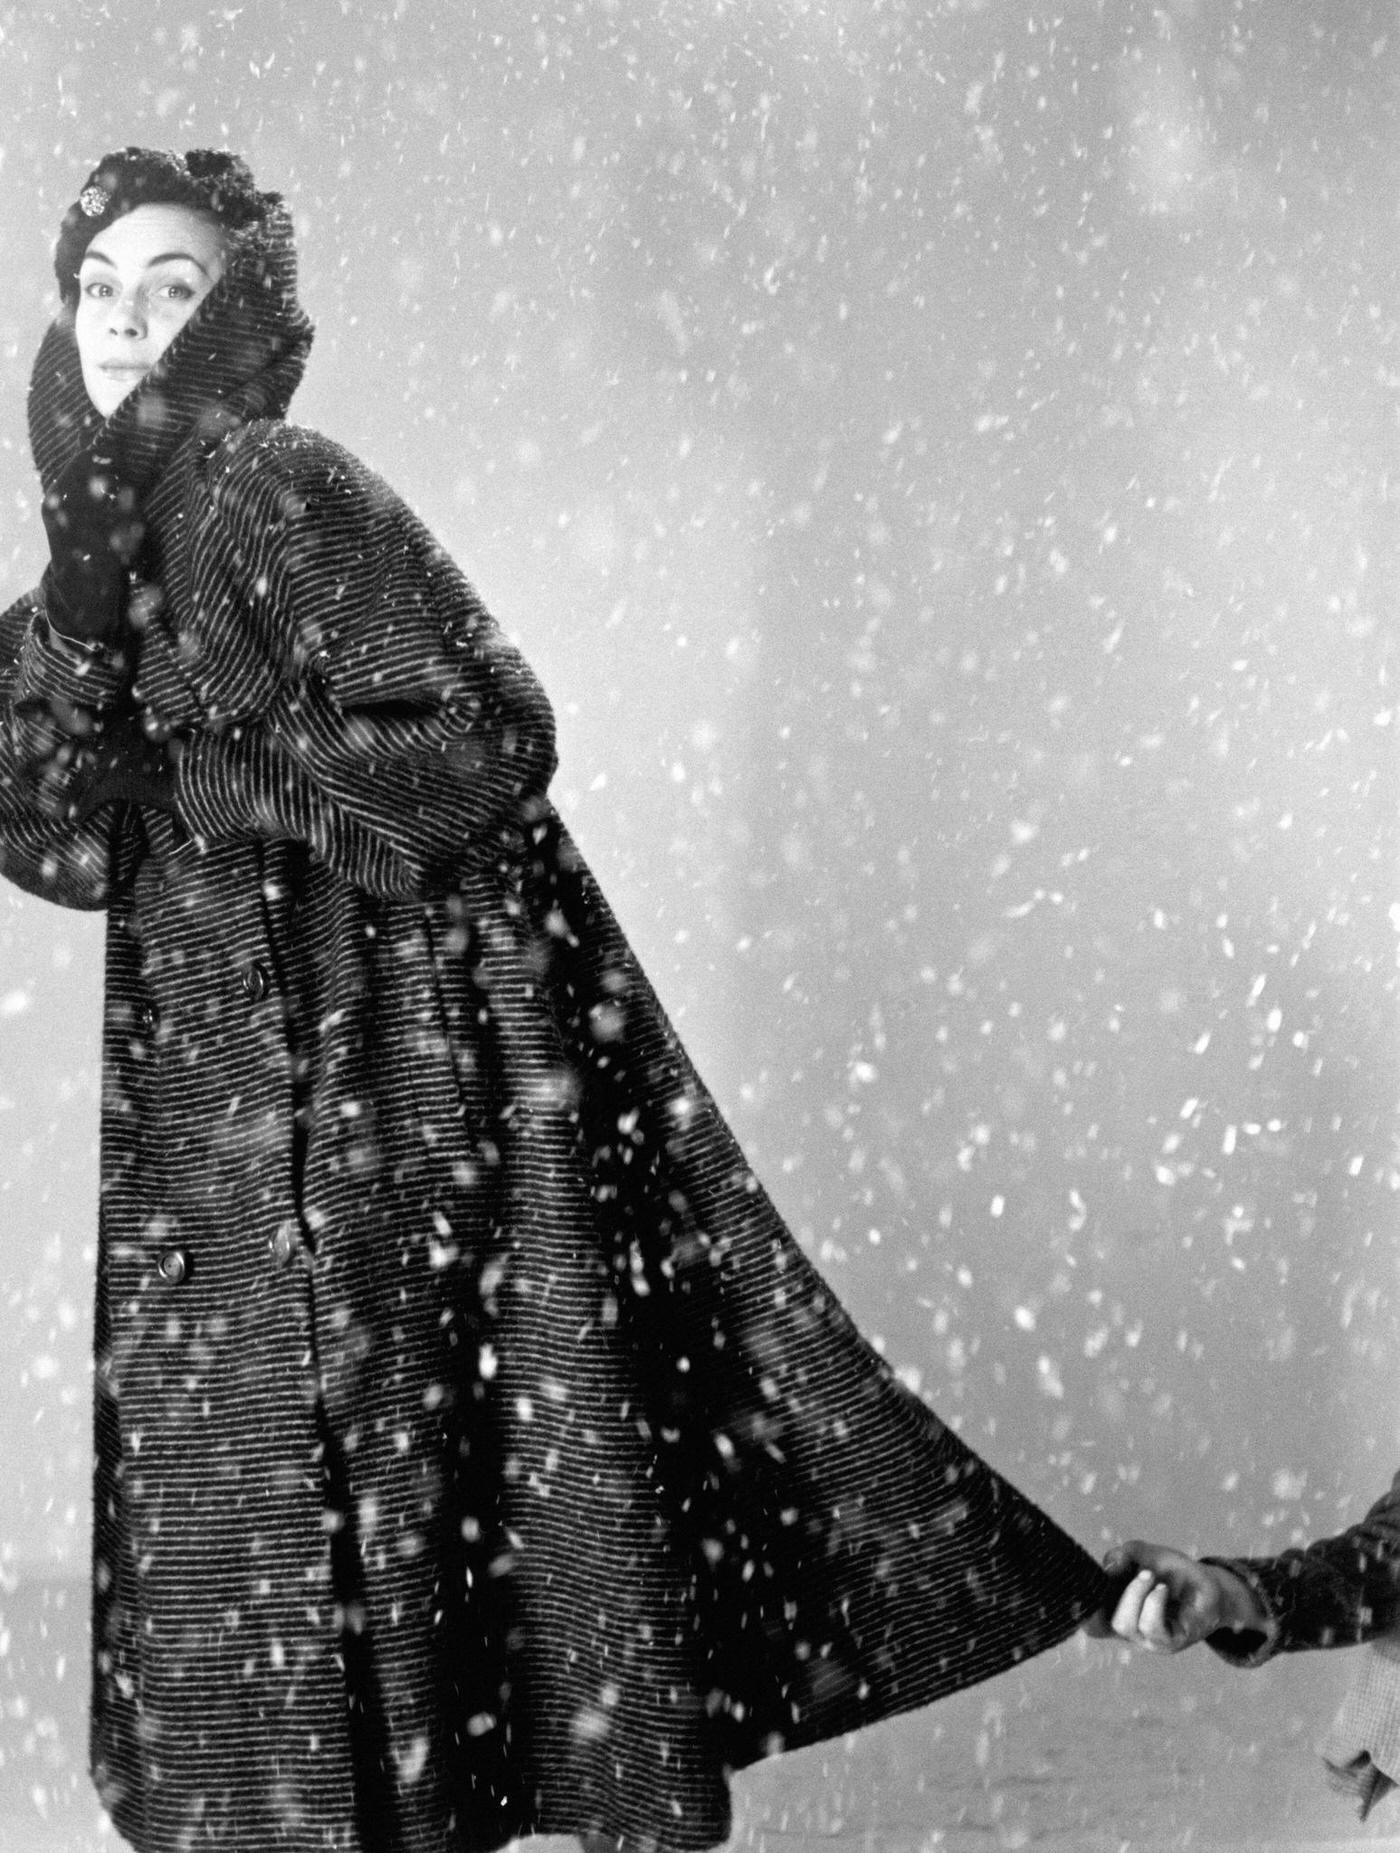 Model Posing In A Studio Under Artificial Snow, Paris, 1951.